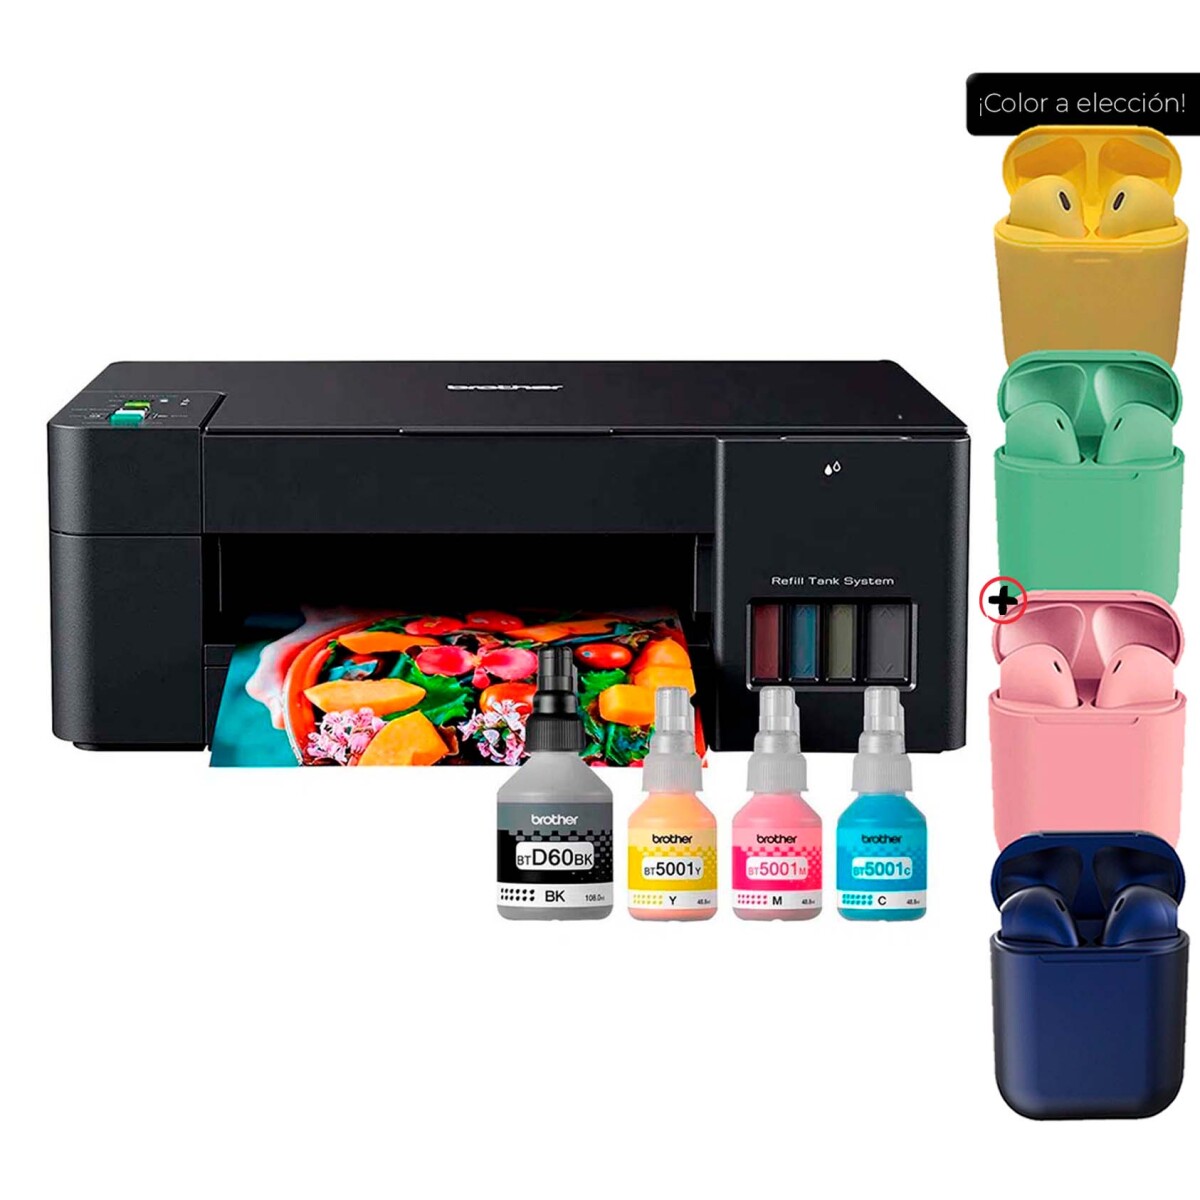 Impresora A Color Multifunción Brother Dcp-t420w Con Wifi + Auriculares 